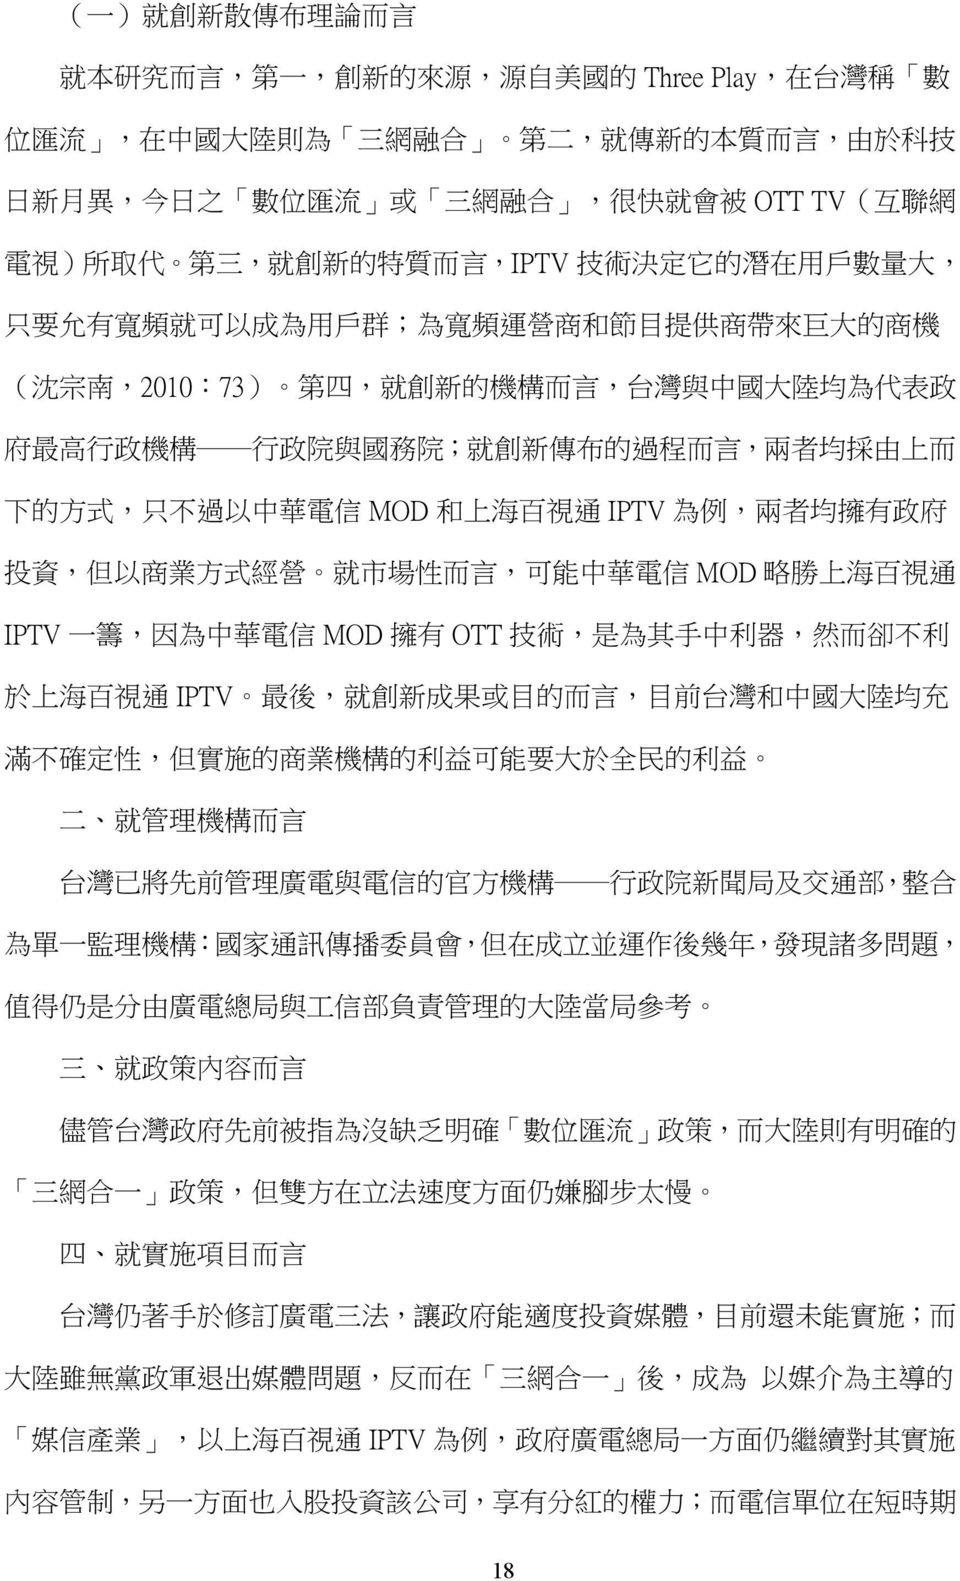 府 最 高 行 政 機 構 行 政 院 與 國 務 院 ; 就 創 新 傳 布 的 過 程 而 言, 兩 者 均 採 由 上 而 下 的 方 式, 只 不 過 以 中 華 電 信 MOD 和 上 海 百 視 通 IPTV 為 例, 兩 者 均 擁 有 政 府 投 資, 但 以 商 業 方 式 經 營 就 市 場 性 而 言, 可 能 中 華 電 信 MOD 略 勝 上 海 百 視 通 IPTV